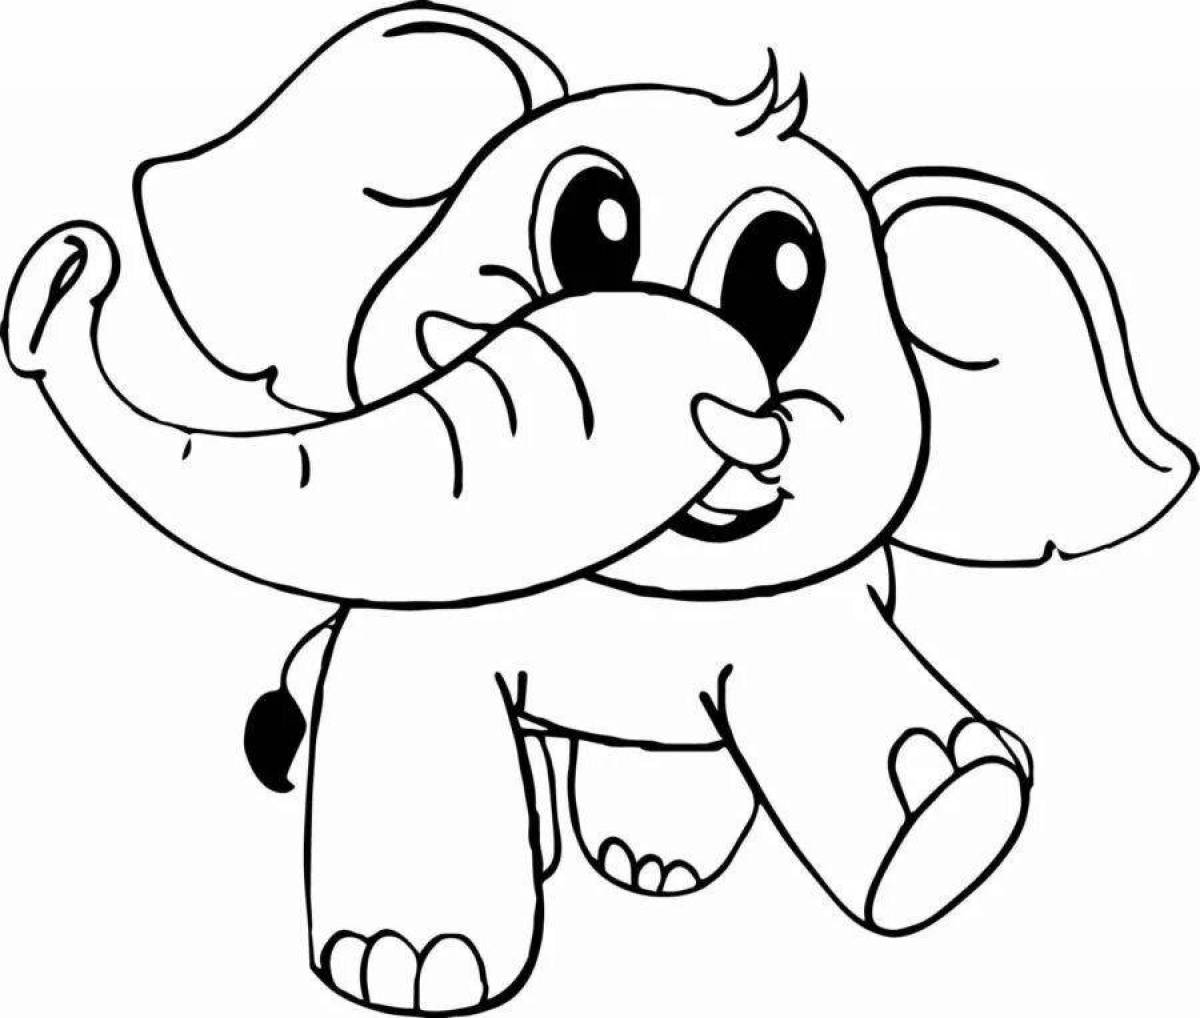 Забавная раскраска слона для детей